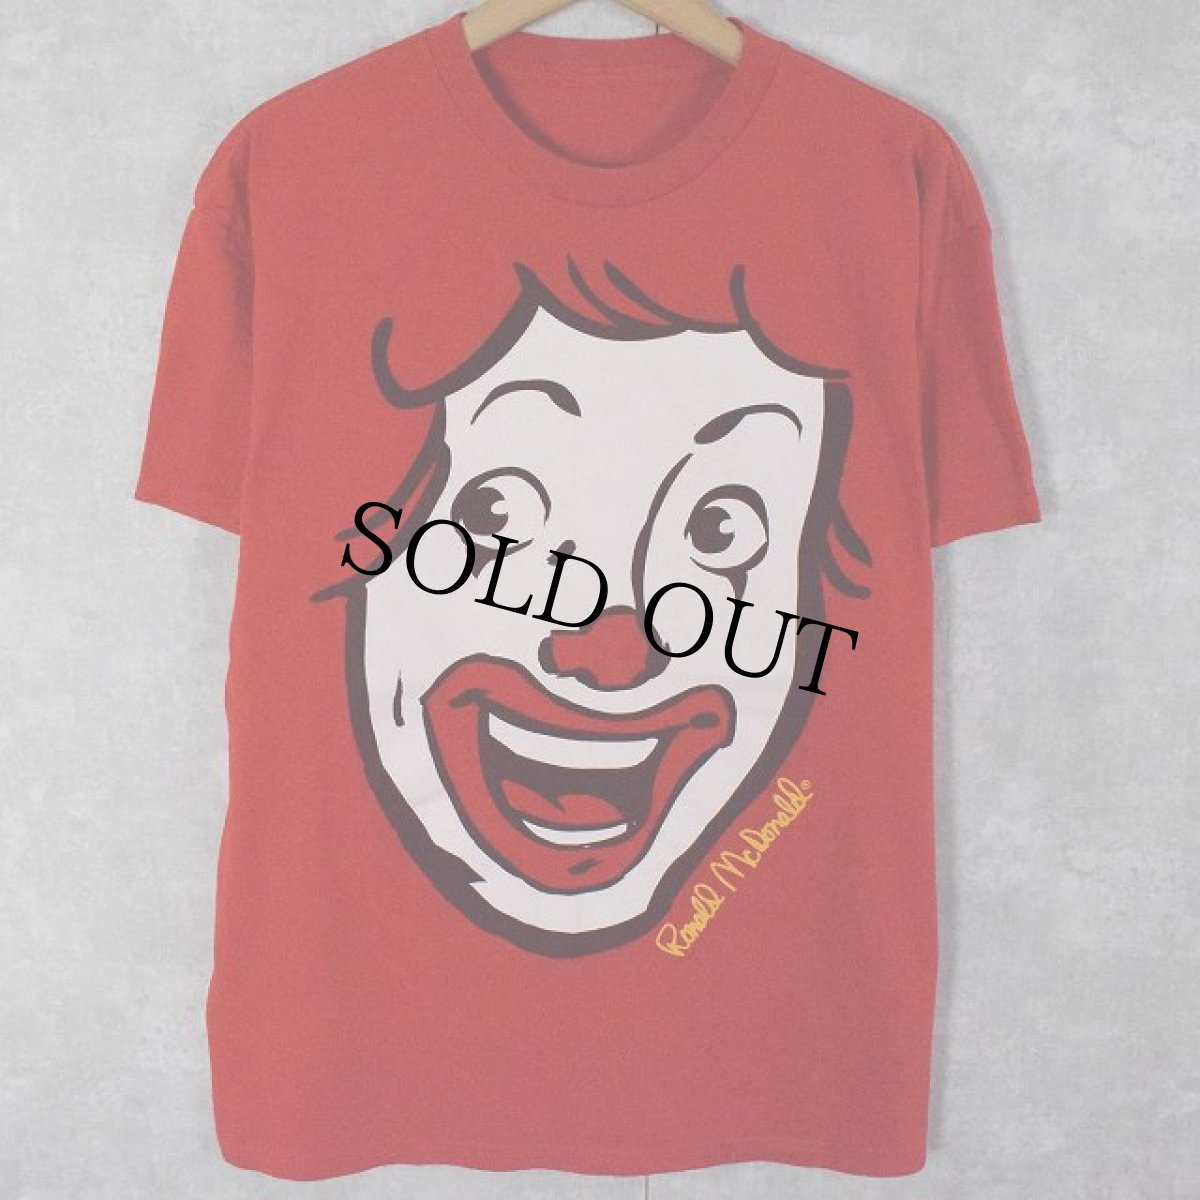 画像1: Ronald McDonald イラストプリントTシャツ  (1)